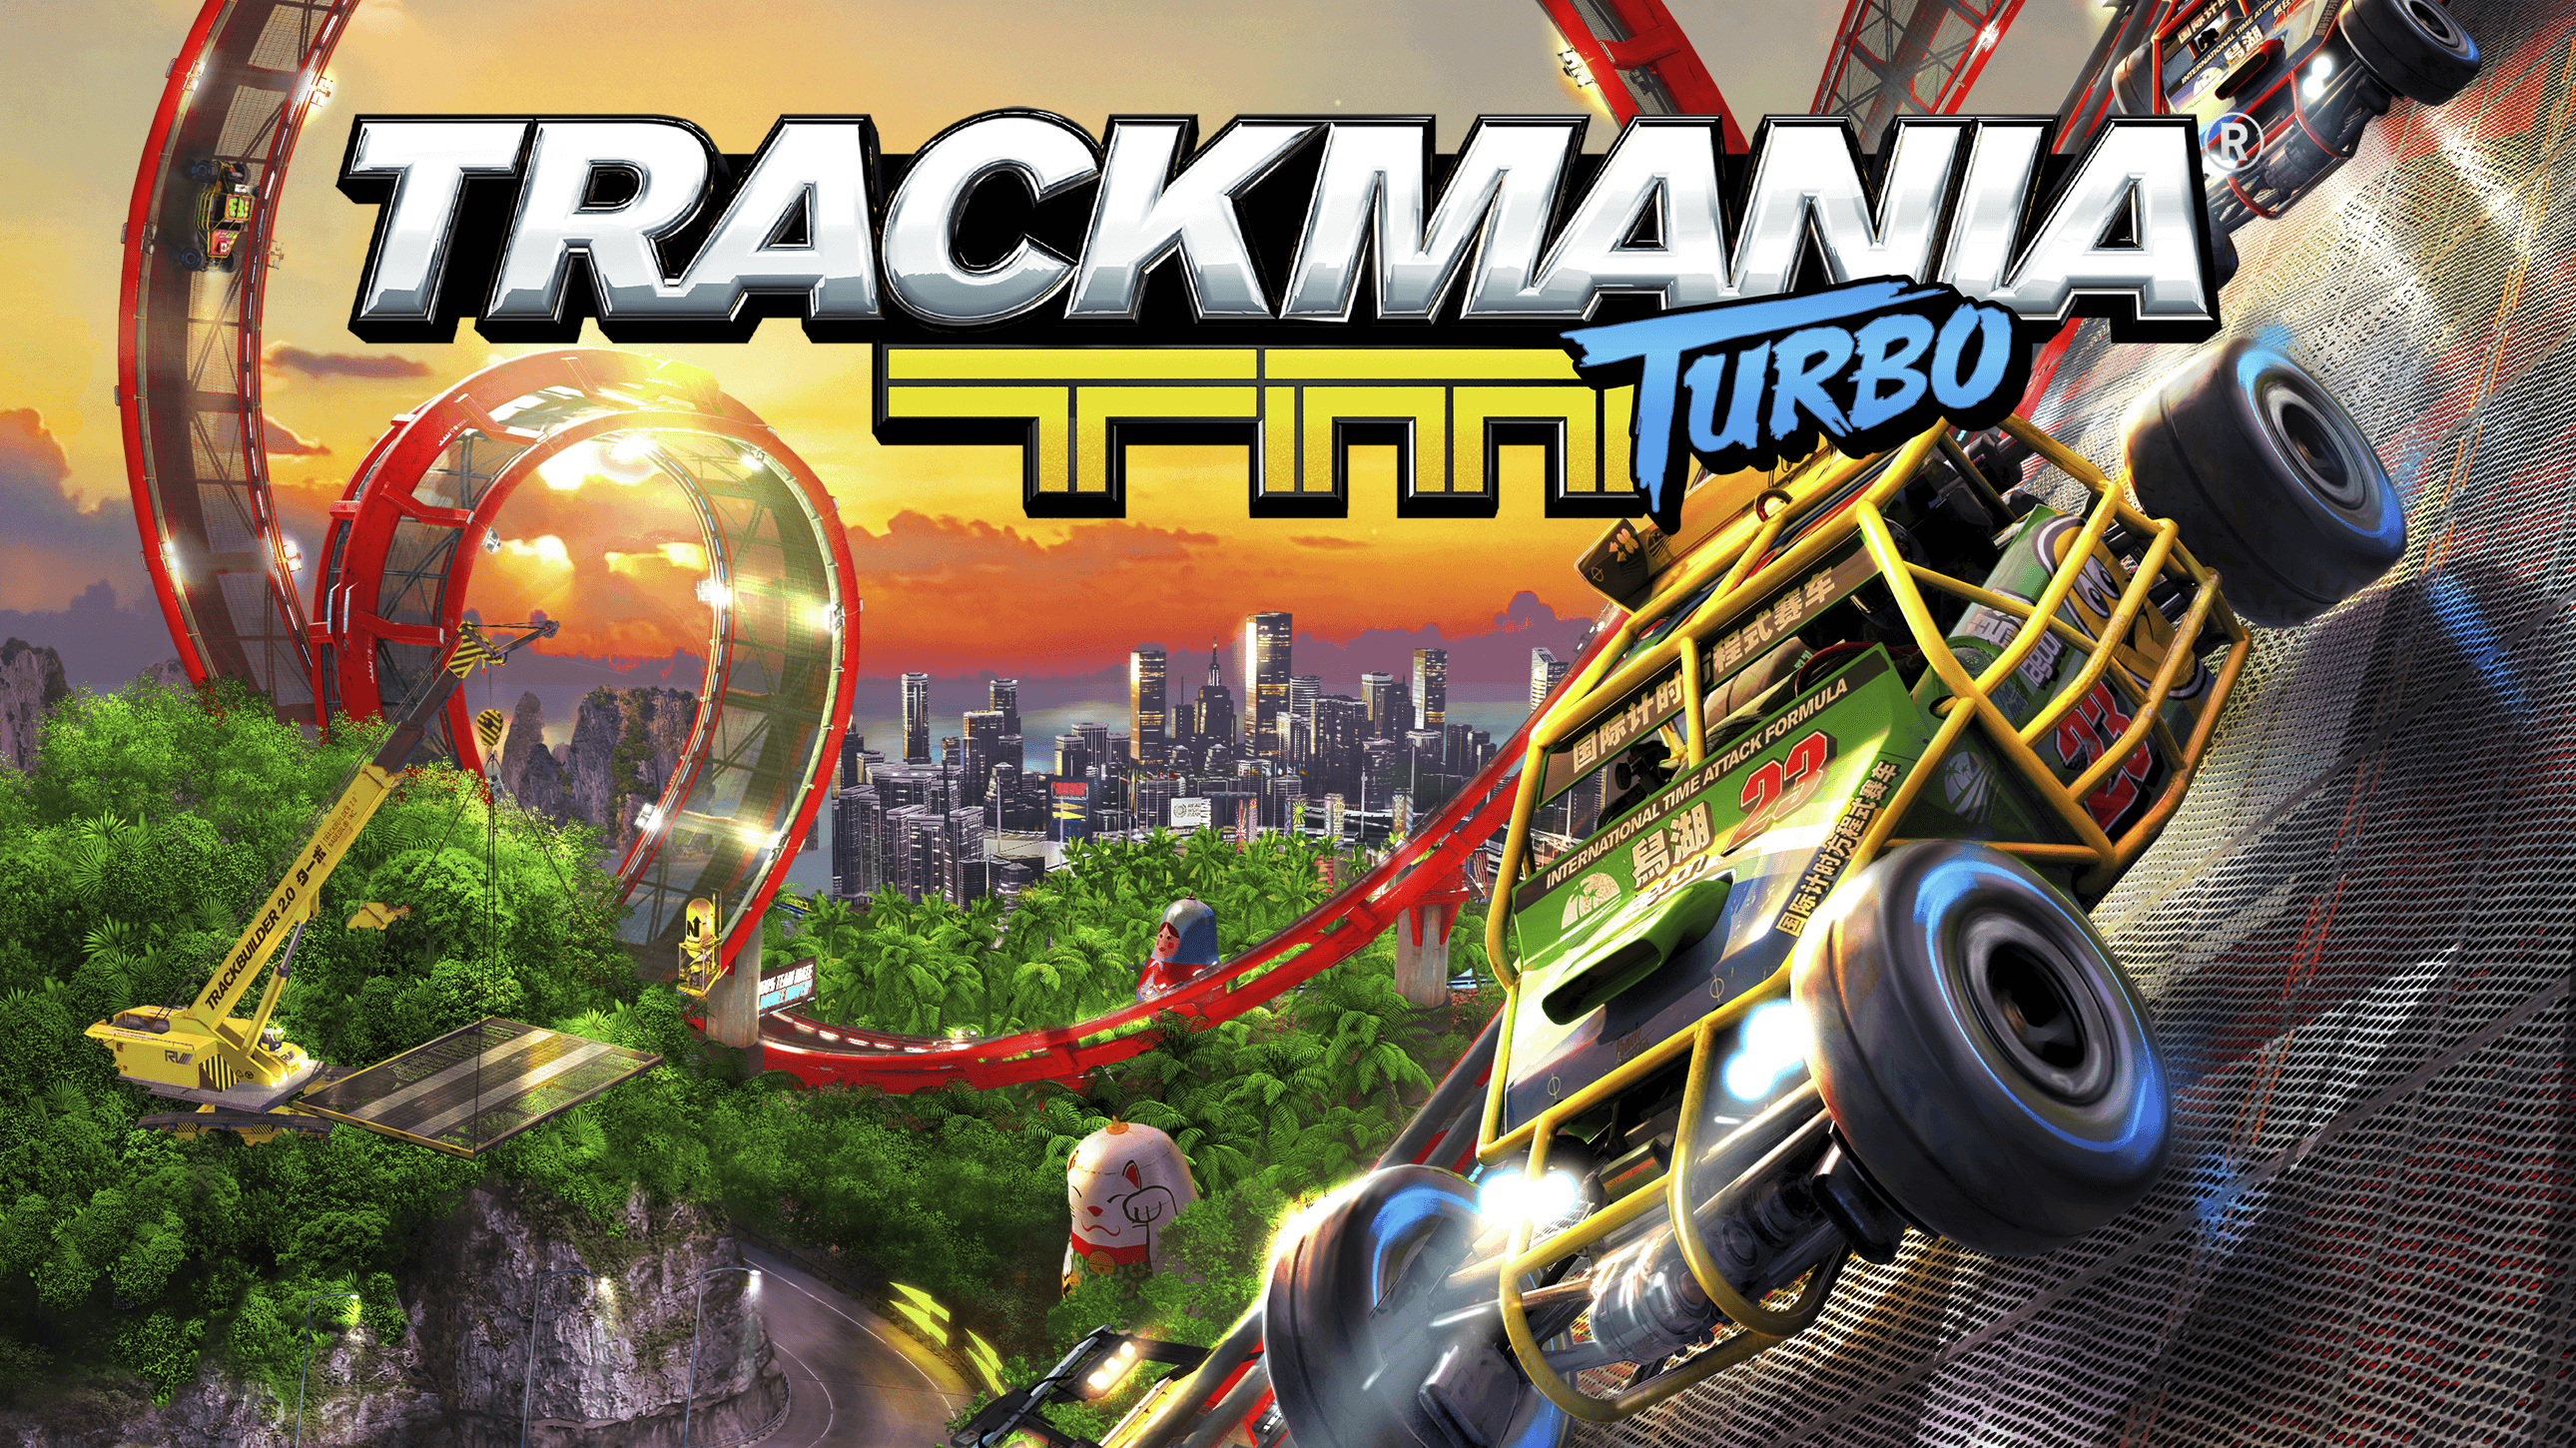 giochi di macchine ps4: Trackmania Turbo